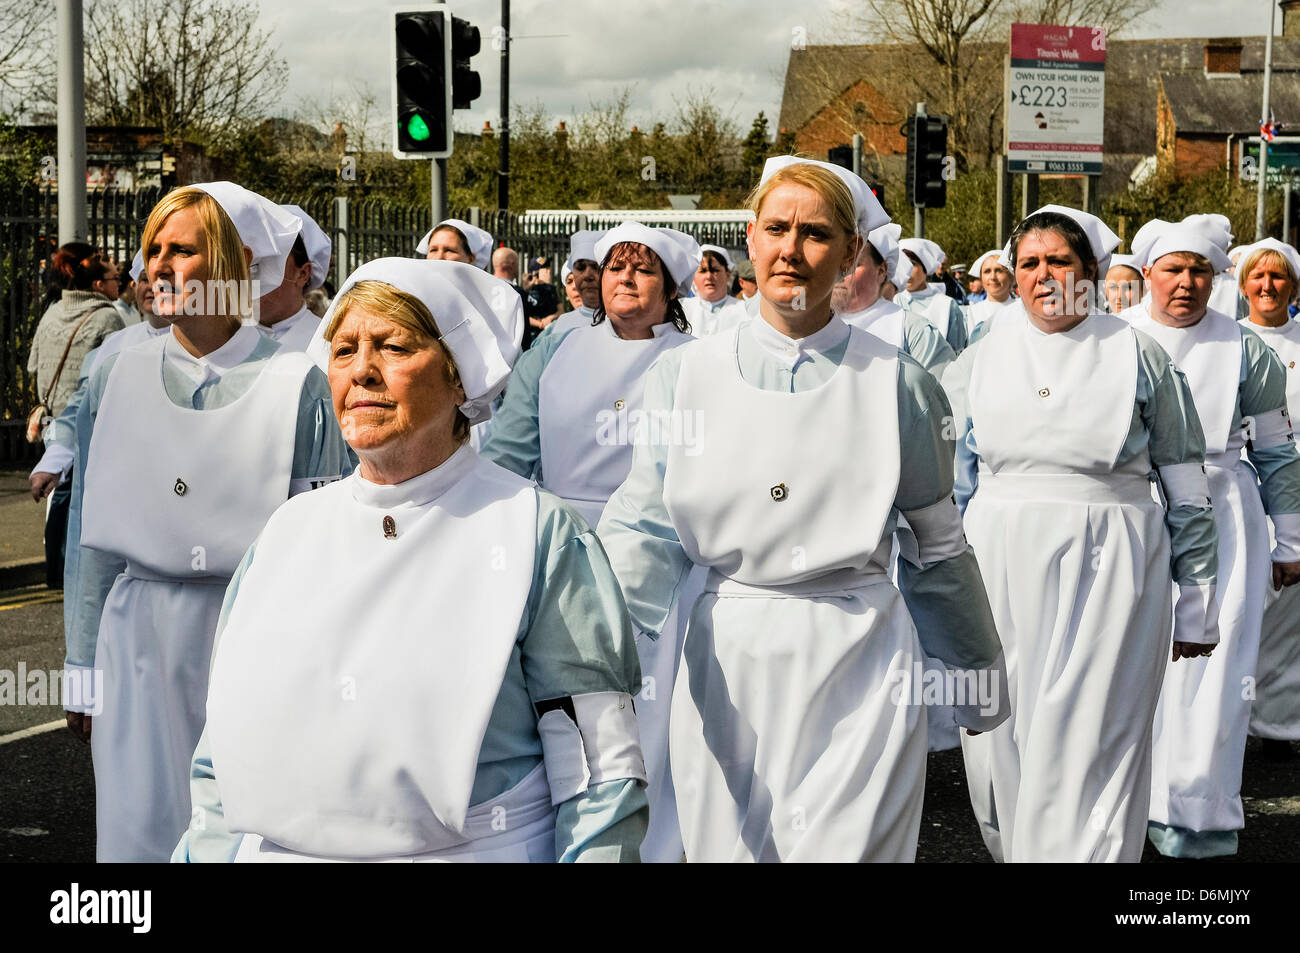 Belfast, Irlanda del Nord. Xx Aprile, 2013. Donne abbigliate come infermiere da 1913 prendere parte alla parata centenario di fondazione dell'UVF nel 1913 Credit: Stepehn Barnes/Alamy Live News Foto Stock